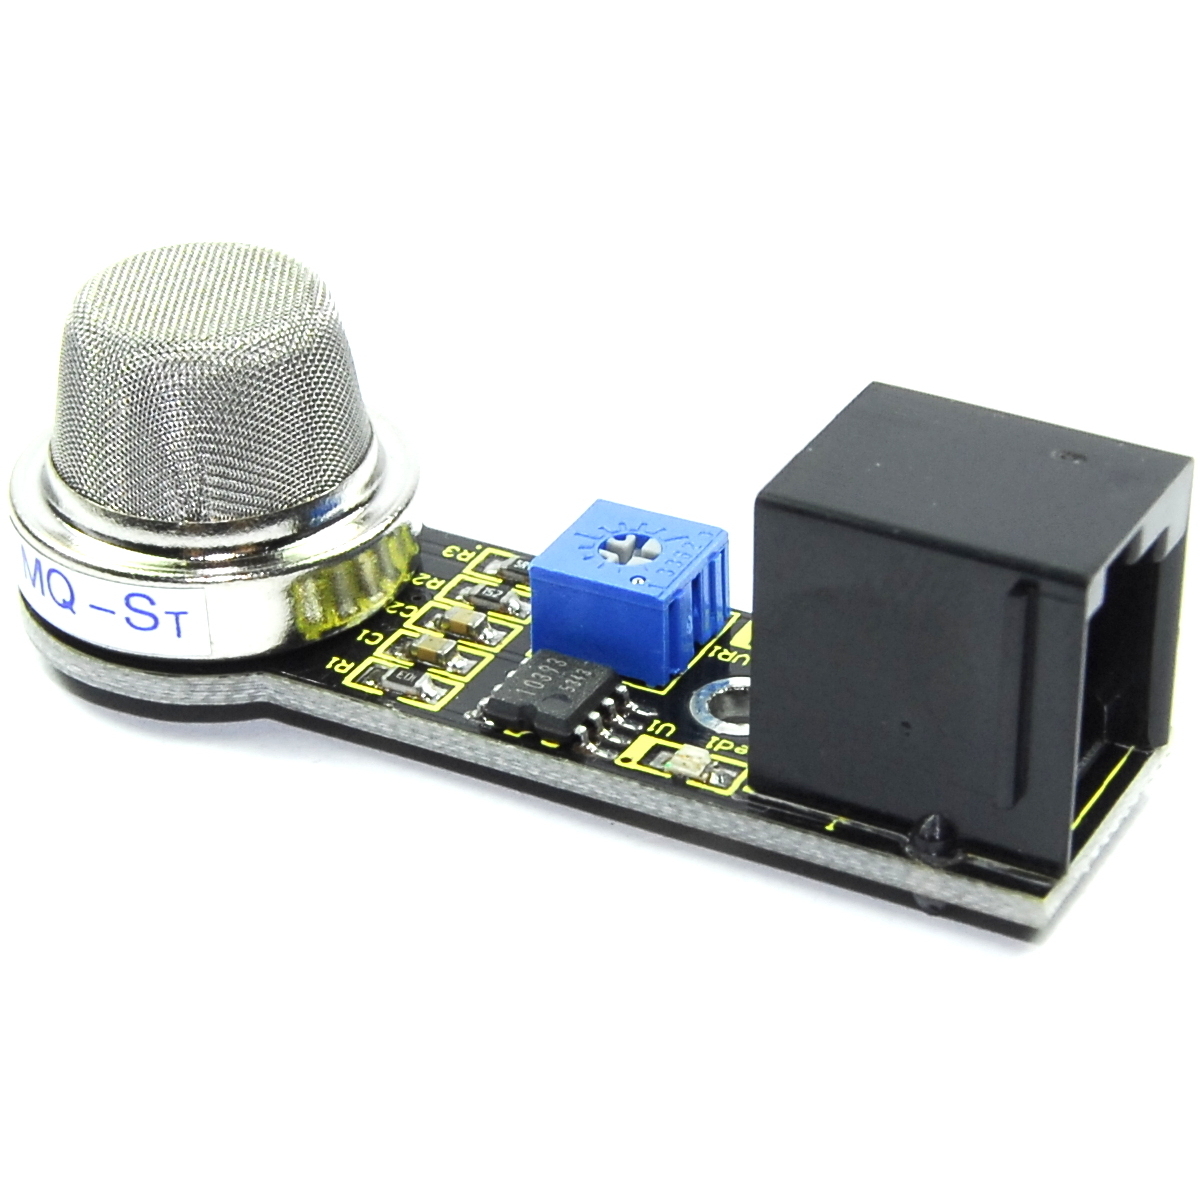 EASY-plug MQ-135 Air Quality Sensor Keyestudio Black Image 2